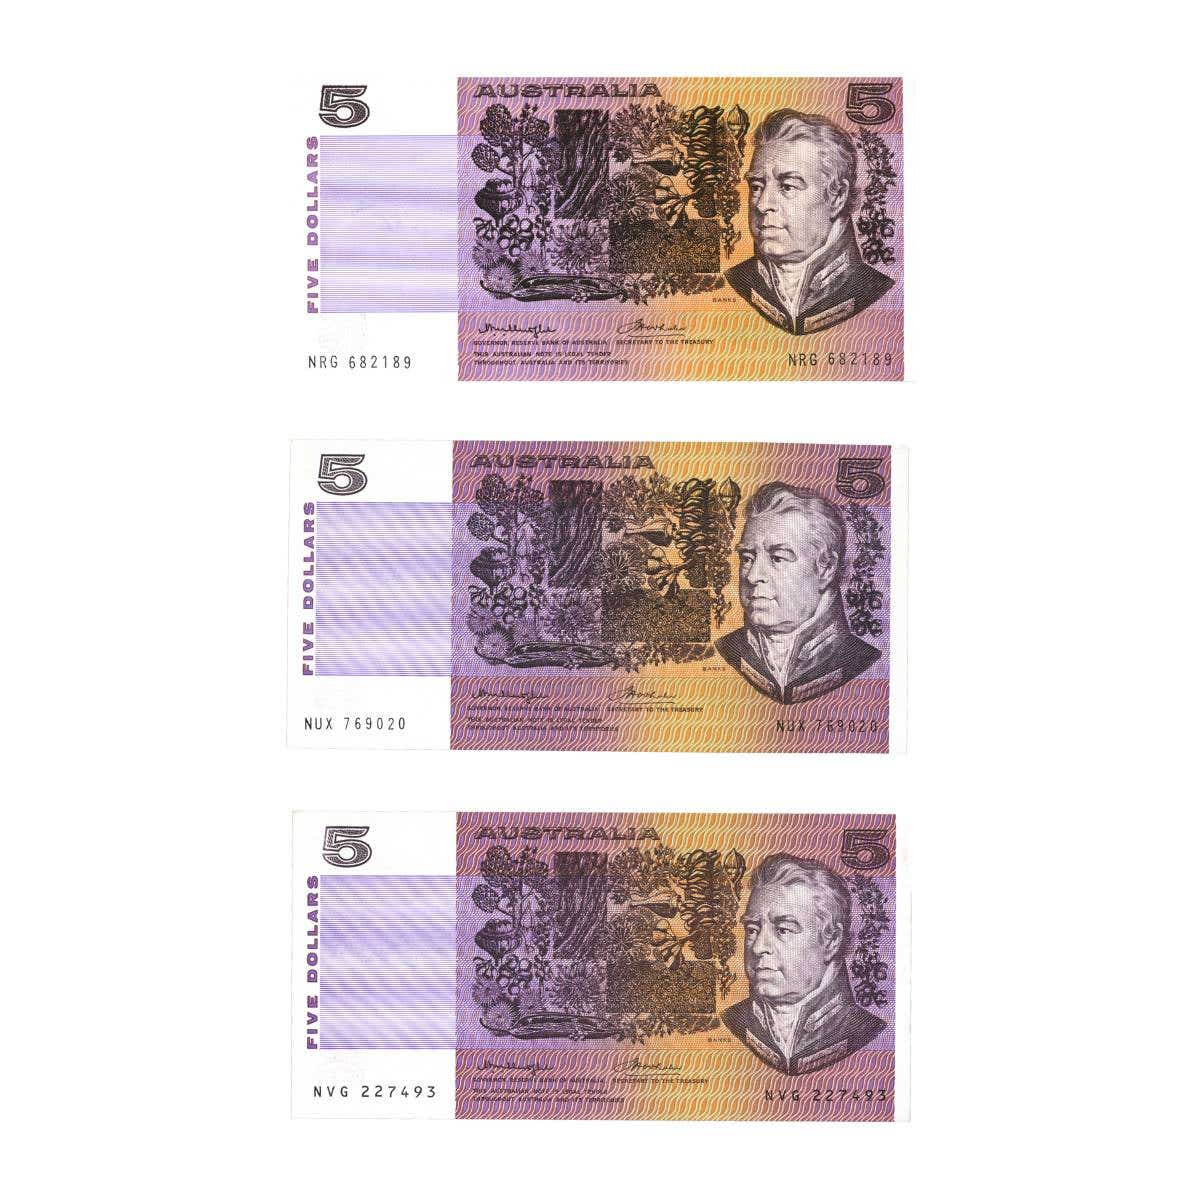 1976 $5 Knight/Wheeler Gothic & OCR-B Centre & OCR-B Side Thread Banknote Trio Uncirculated